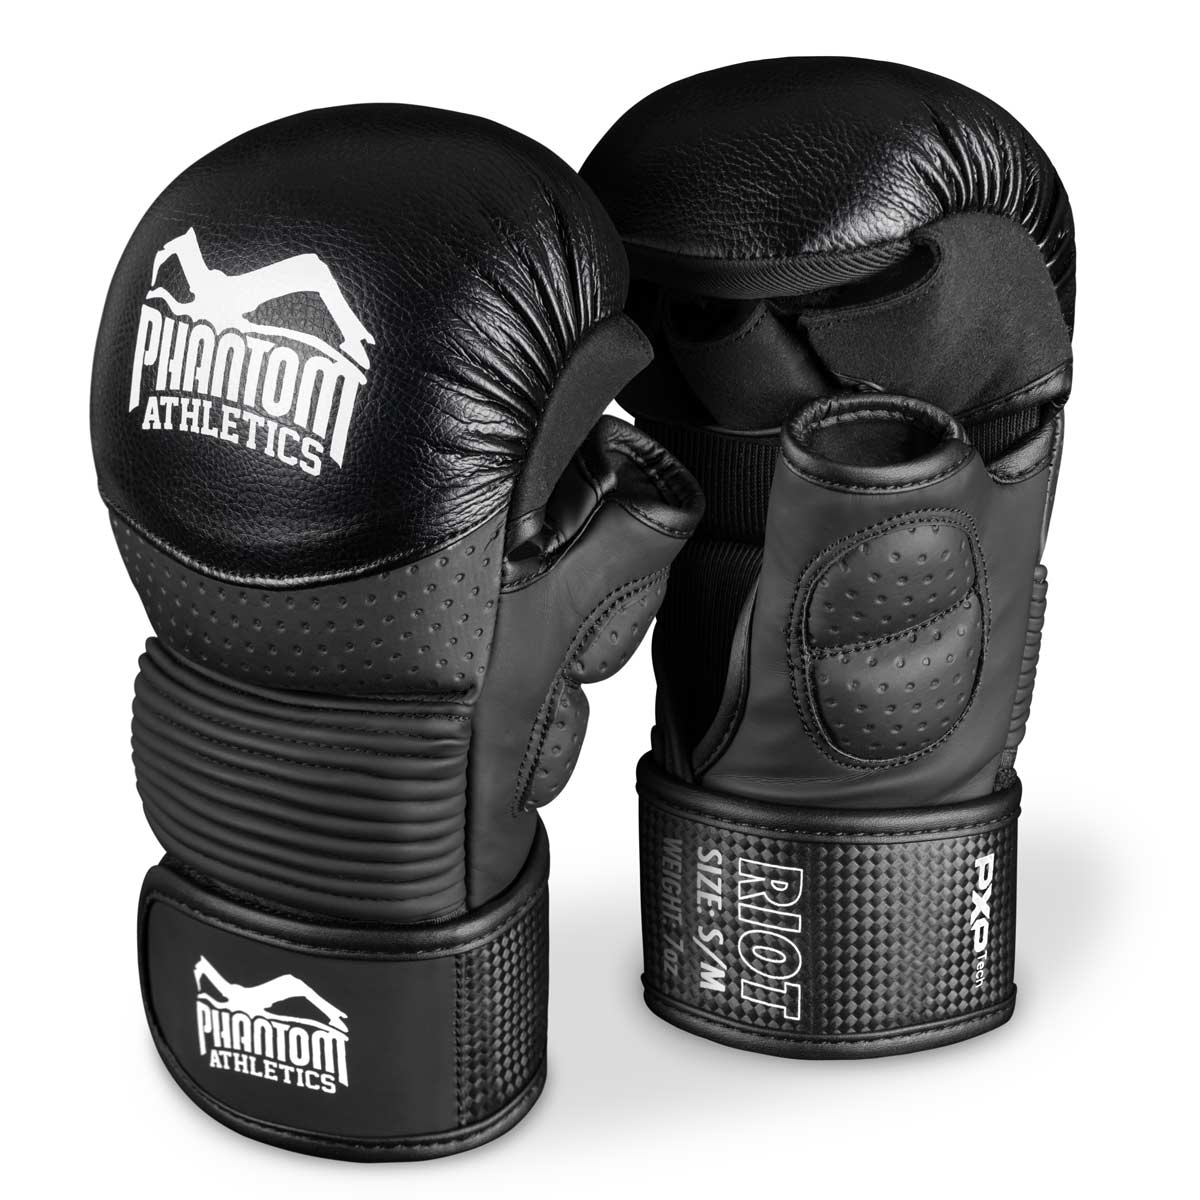 Mănușile de sparring Phantom RIOT PRO MMA. Ideal pentru antrenamentul de arte marțiale și competițiile de amatori. Mănuși de MMA de cea mai înaltă calitate și cele mai sigure de pe piață. Potrivire perfectă și calitate superioară pentru antrenament și sparring.